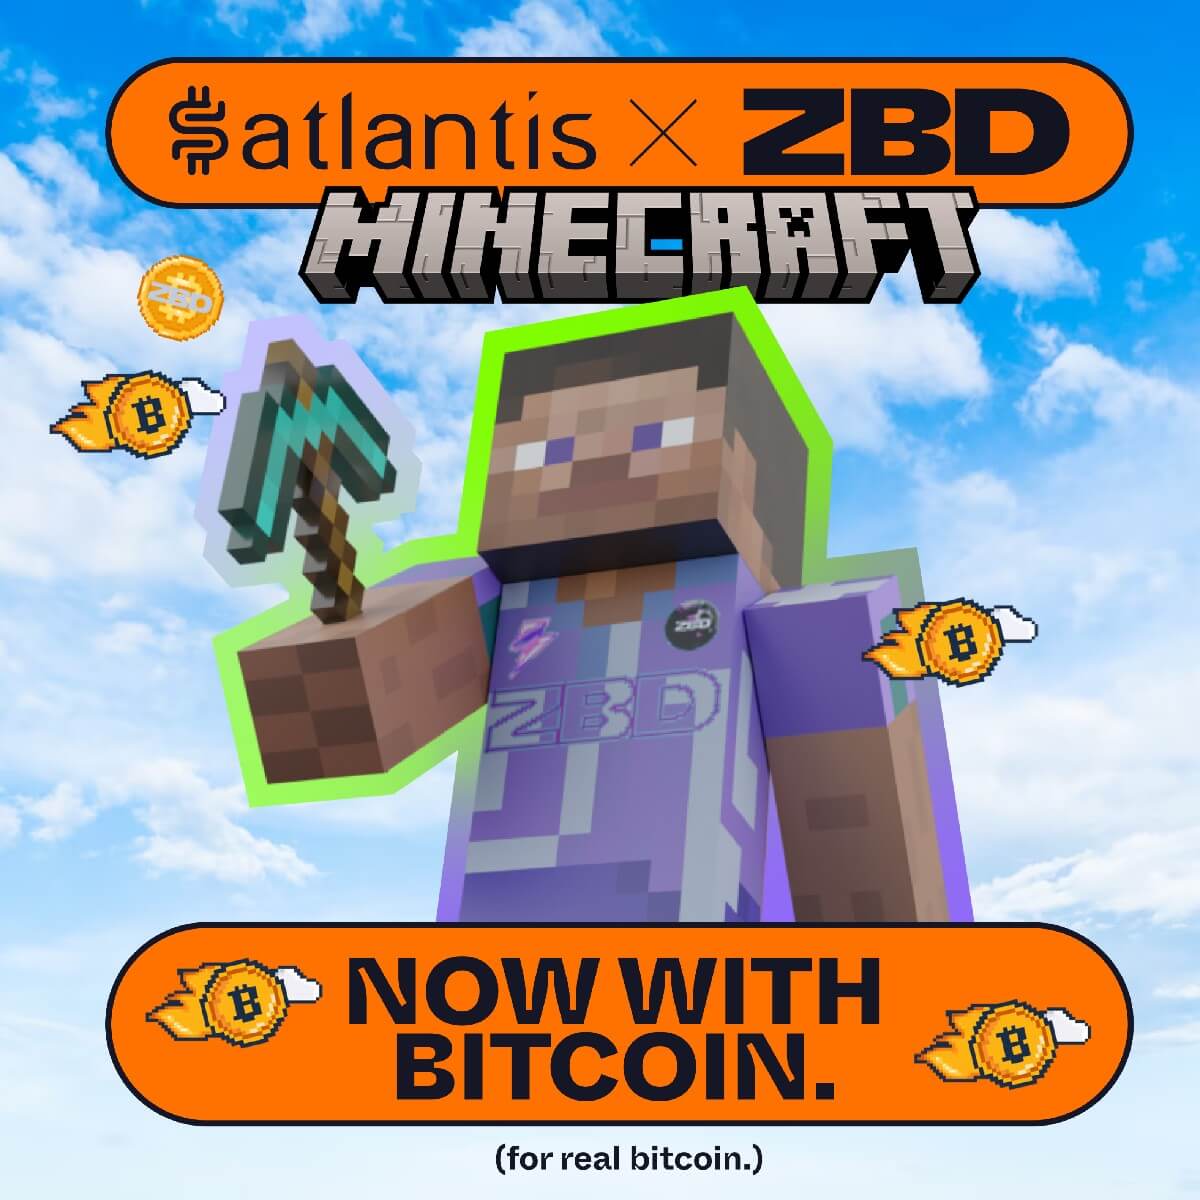 Как заработать криптовалюты в Minecraft? Анонс партнёрства Satlantis и Zebedee о добавлении Биткоин-выплат на специальный сервер Minecraft. Фото.